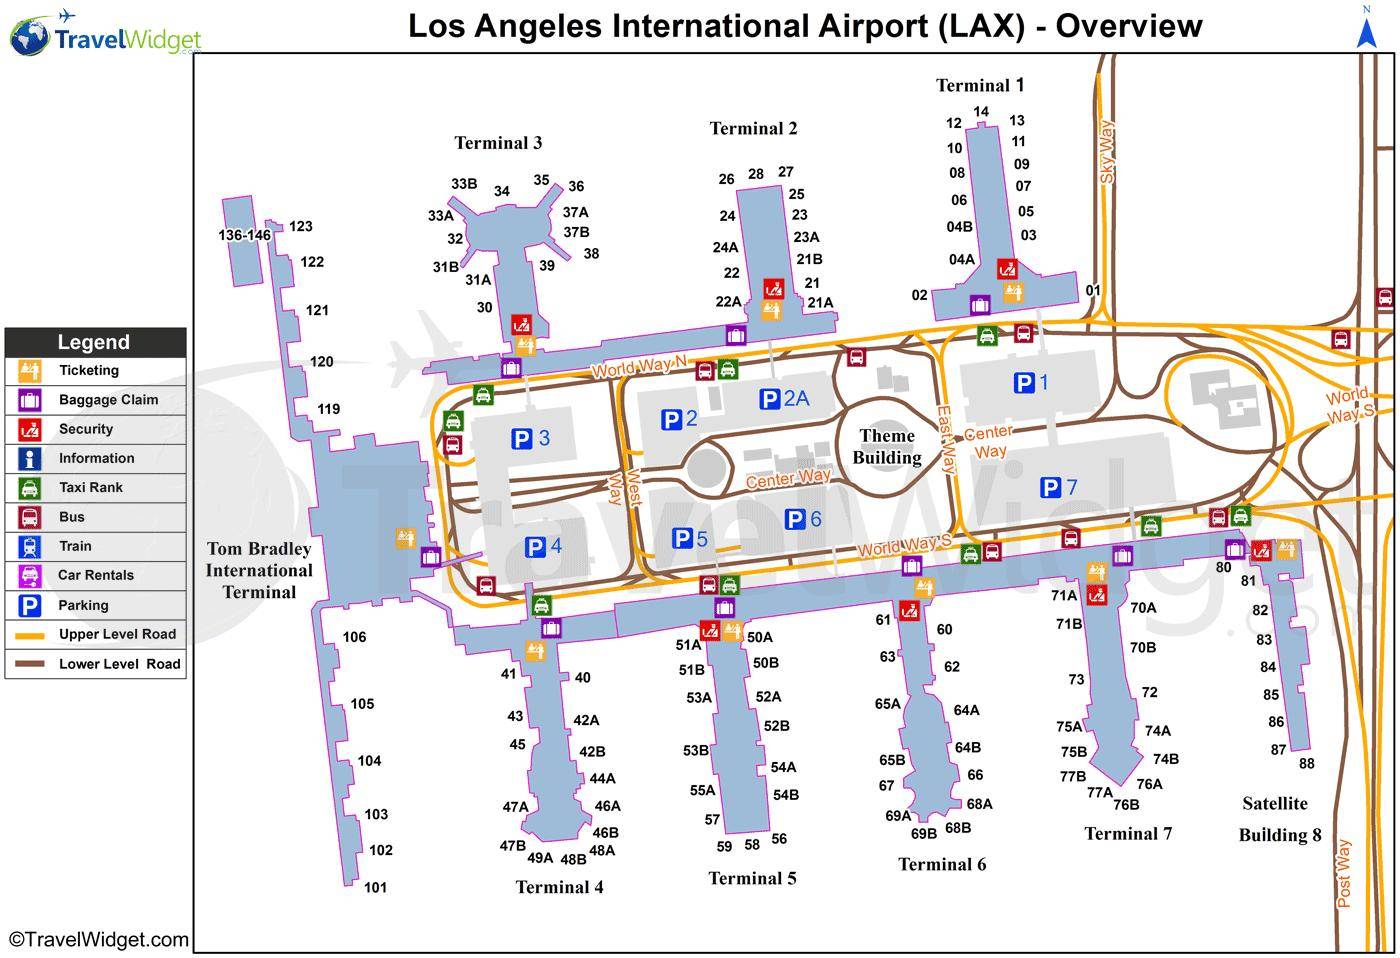 Аэропорт лос-анджелес: адрес, справочные телефоны, терминалы, как добраться до аэропорта